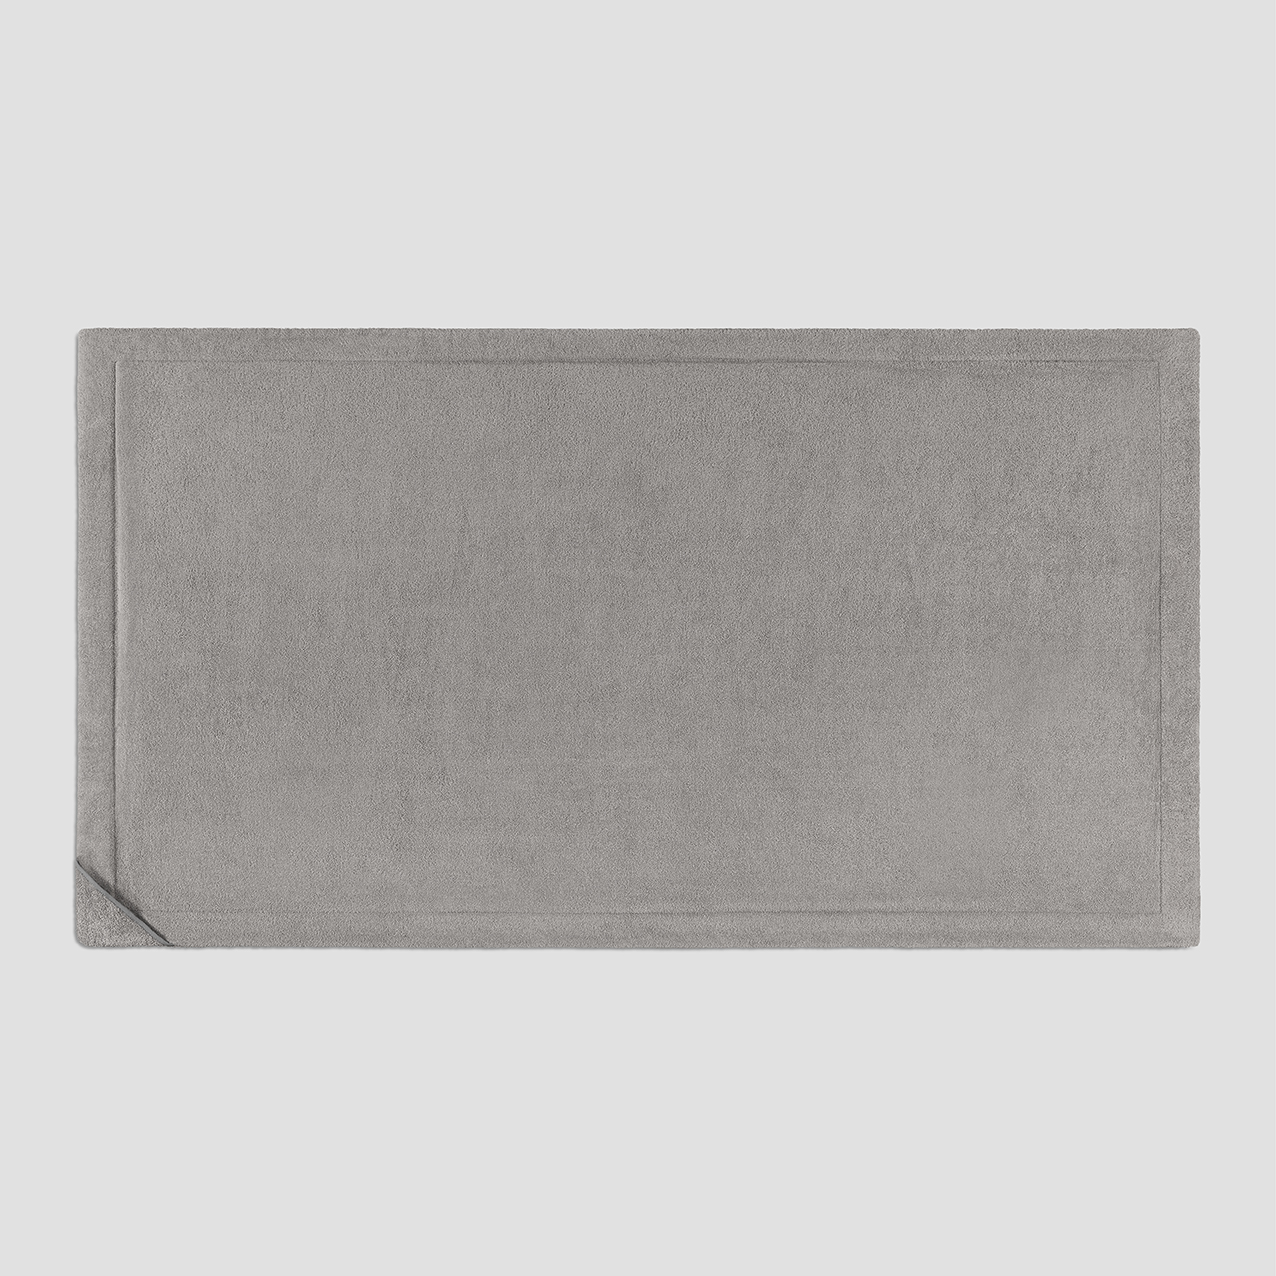 Полотенце Togas Санрей серое 100х180 см, цвет серый - фото 3